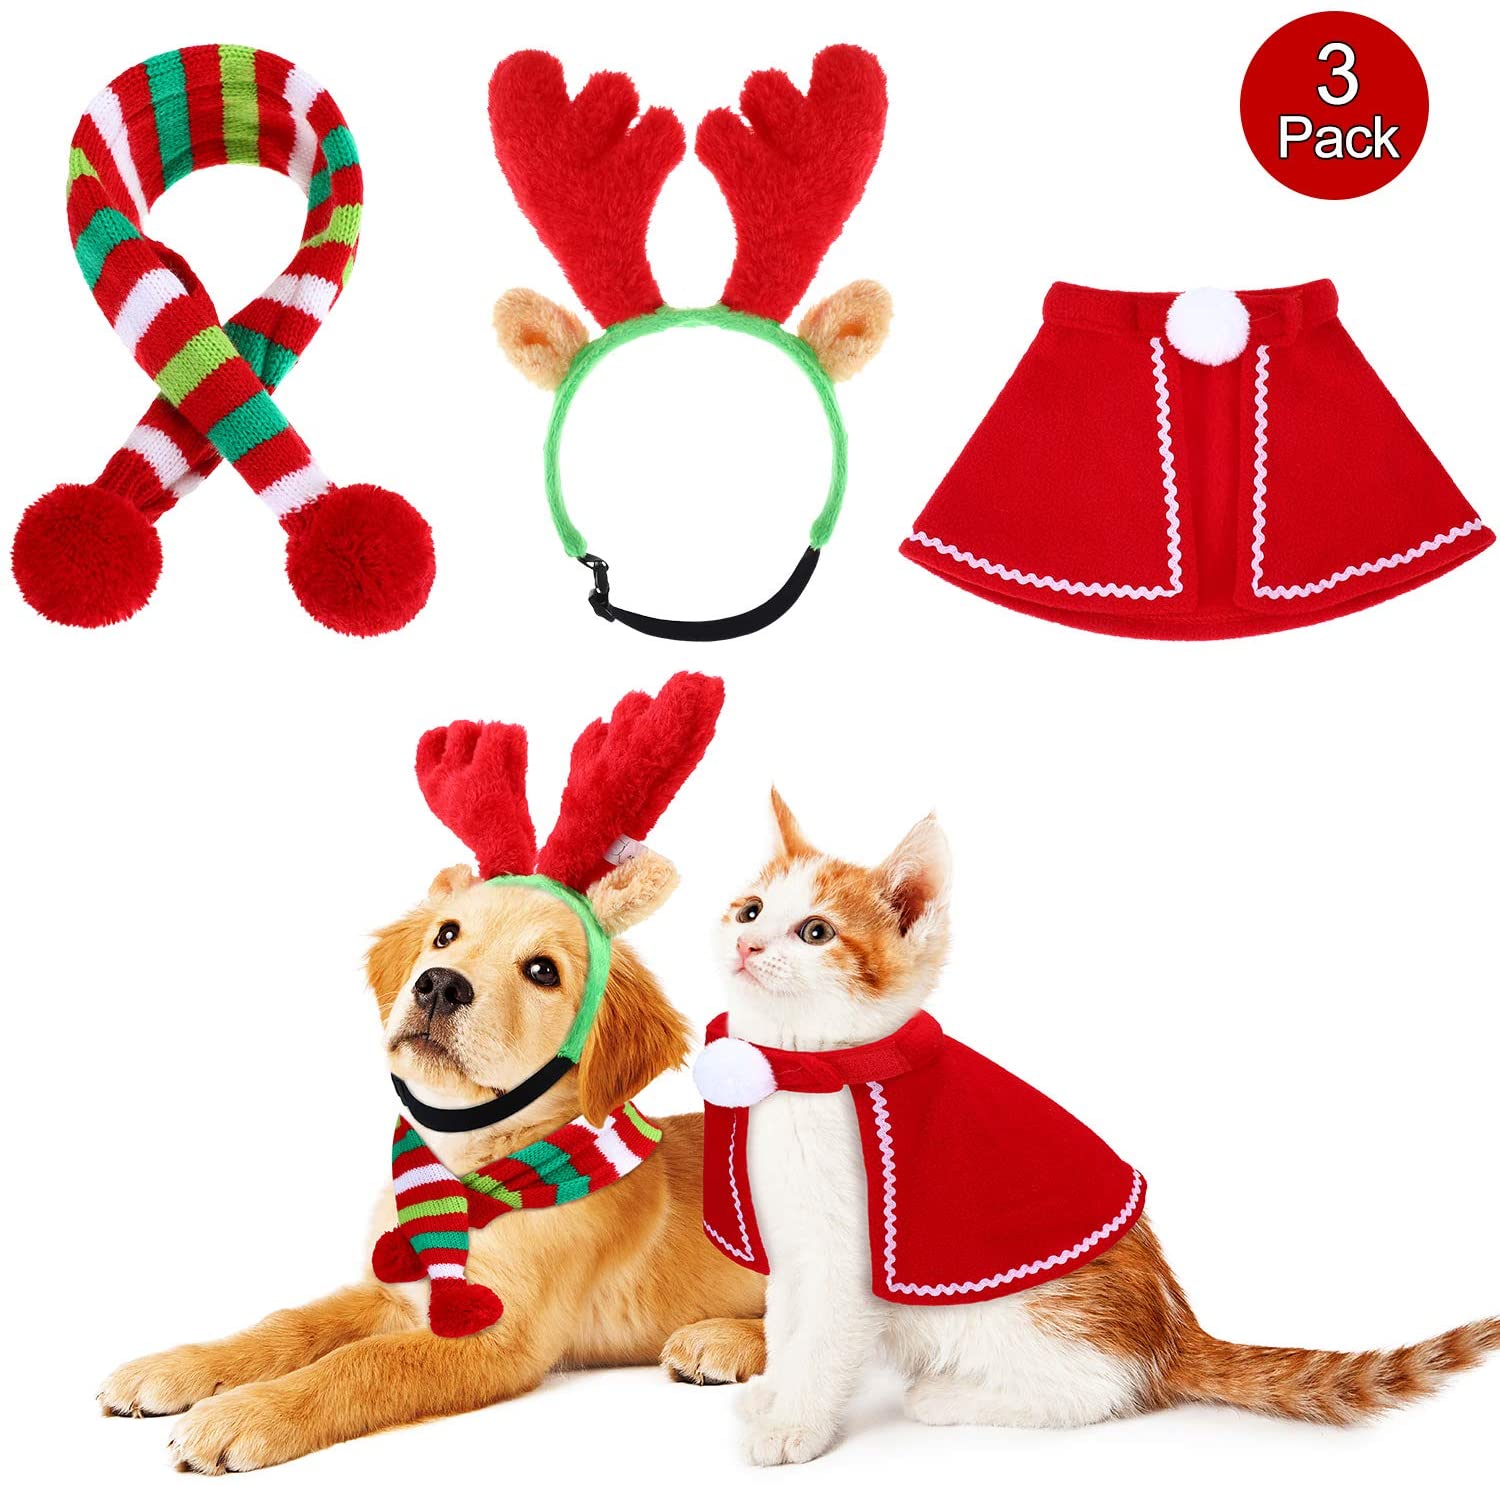  Frienda Astas Reno Navideño con Orejas, Conjunto de Capa y Bufanda de Rayas Verdes Accesorios de Disfraces de Navidad de Perro, para Perros Cachorros Gatos Mascota 